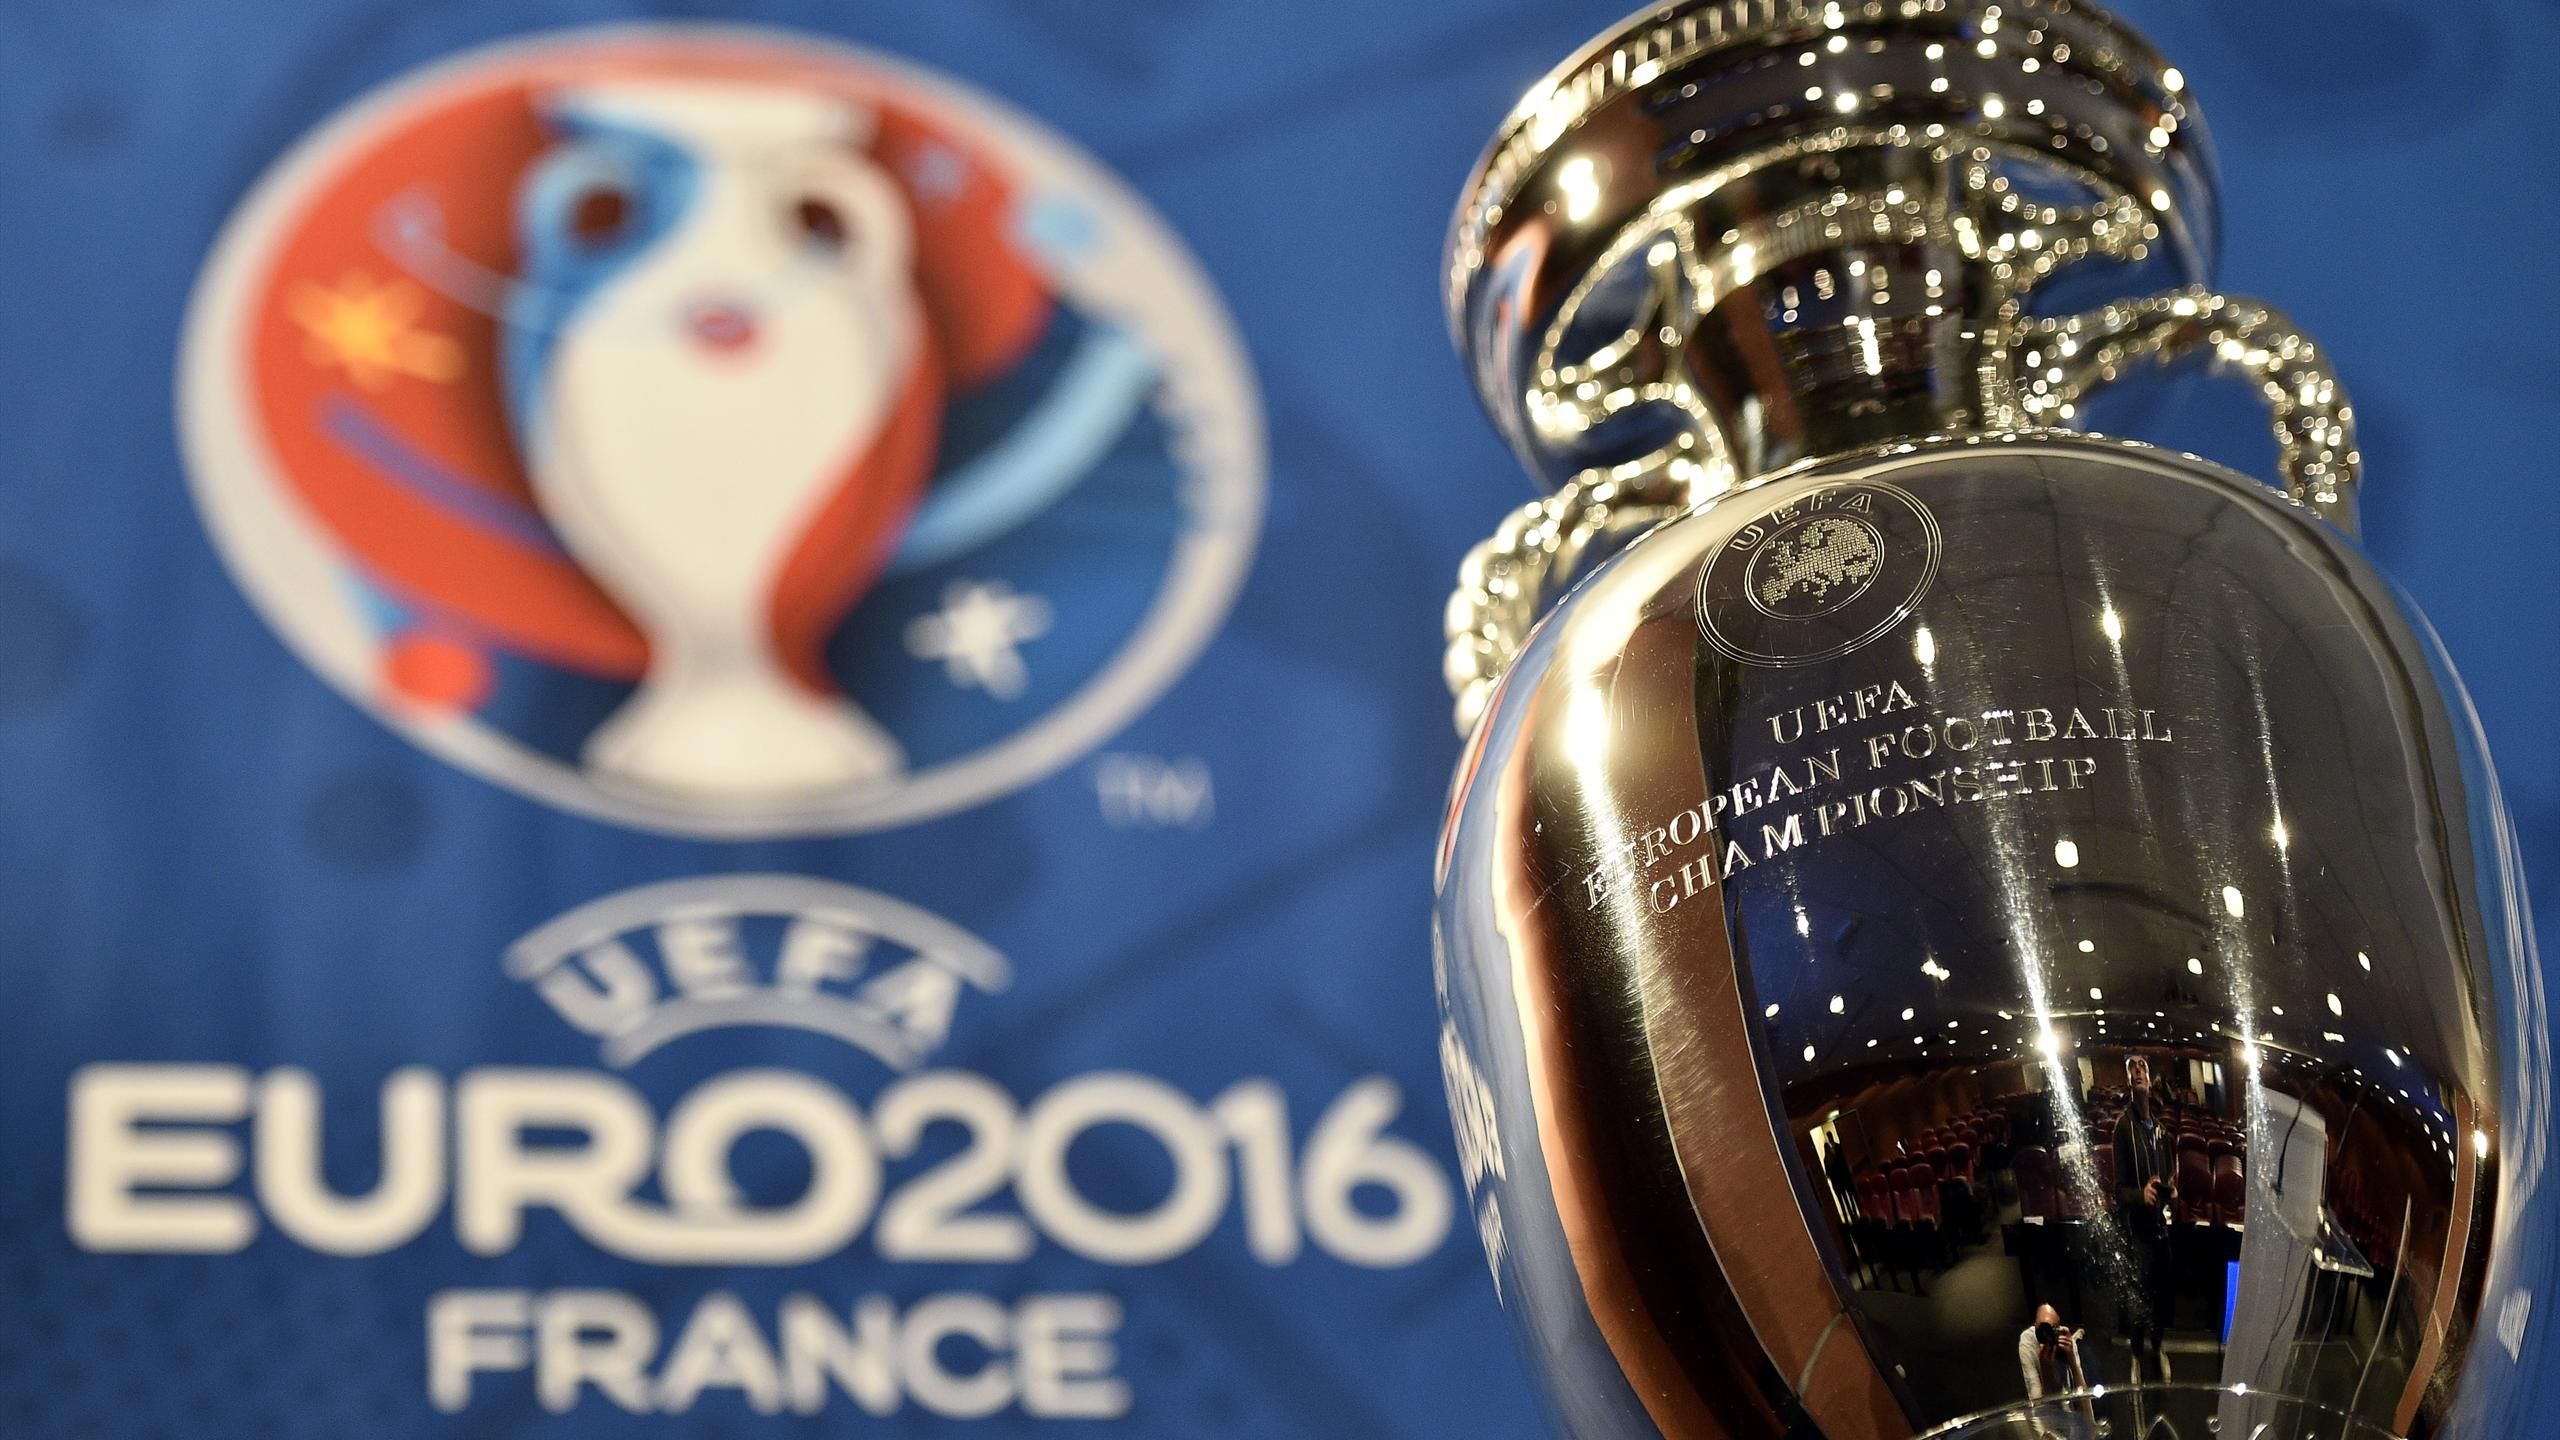 UEFA Euro 2016 Group F - Wikipedia